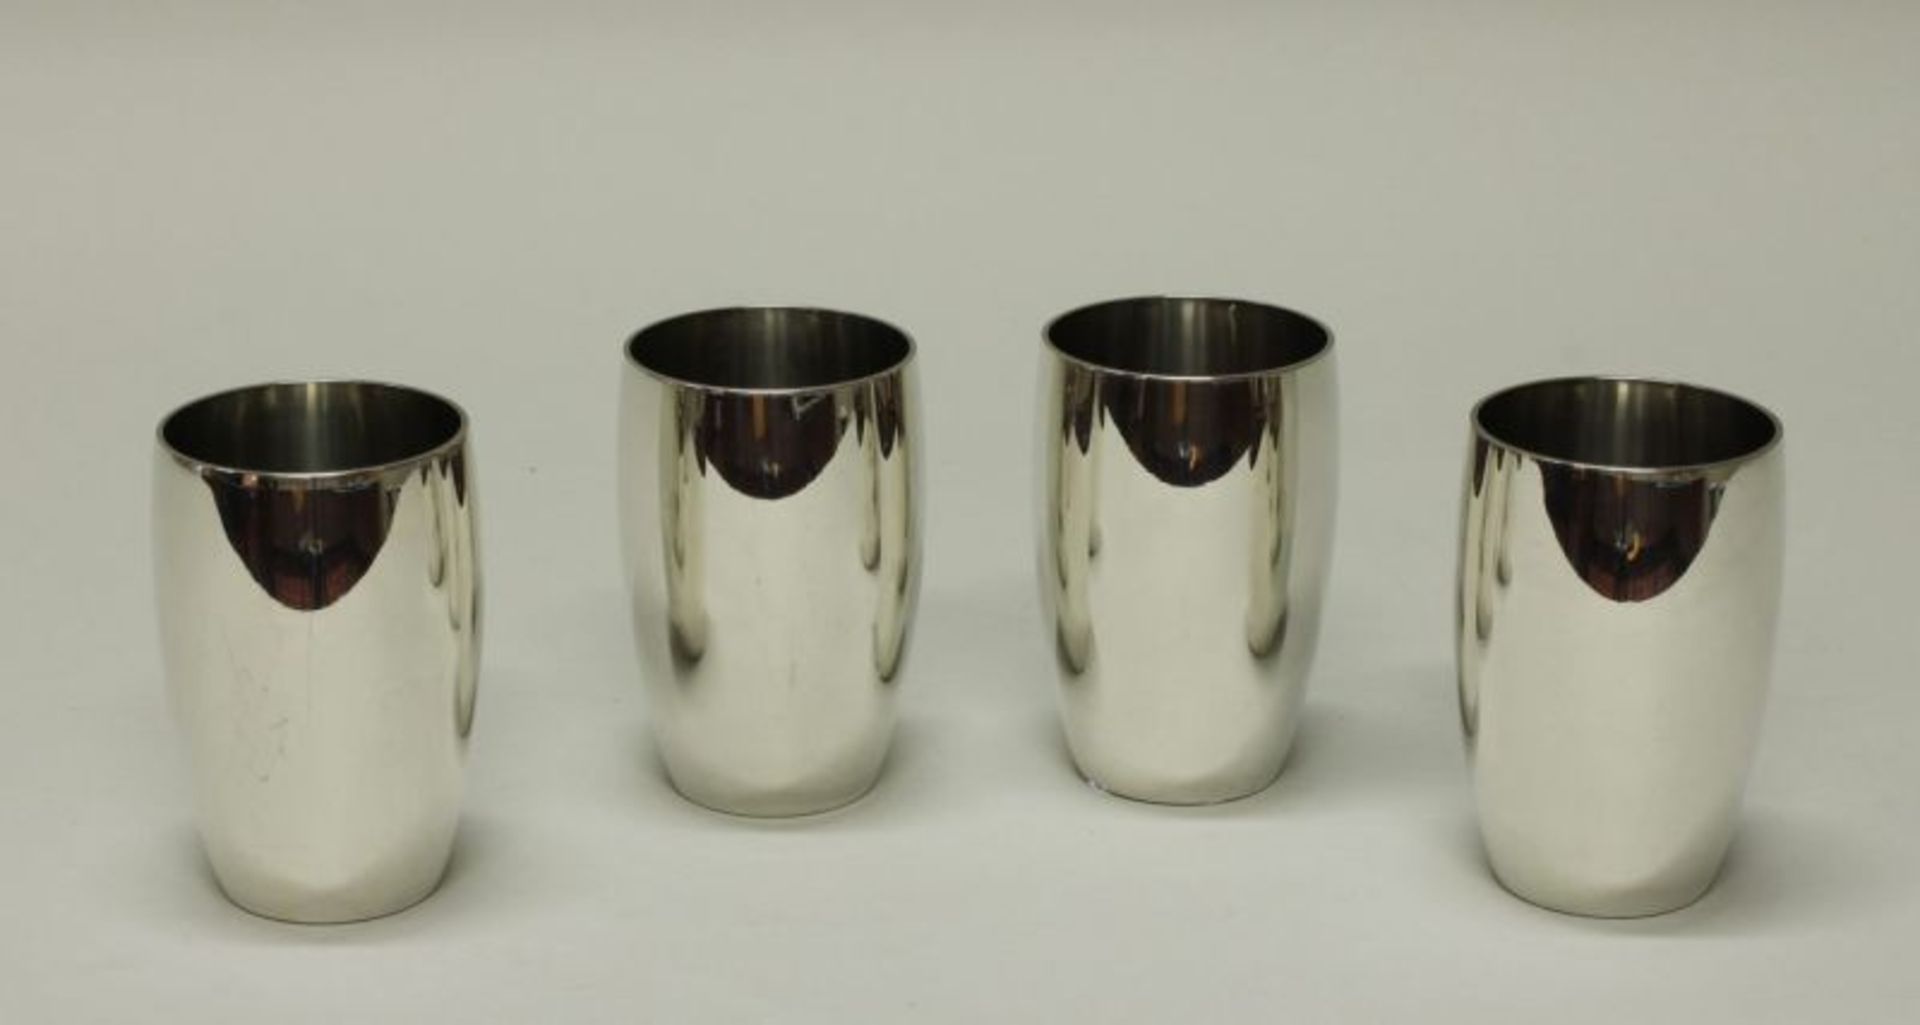 4 Becher, Silber 925, Koch & Bergfeld, glatt, konisch, 9.8 cm hoch, Bodensignet, zus. ca. 610 g 25.